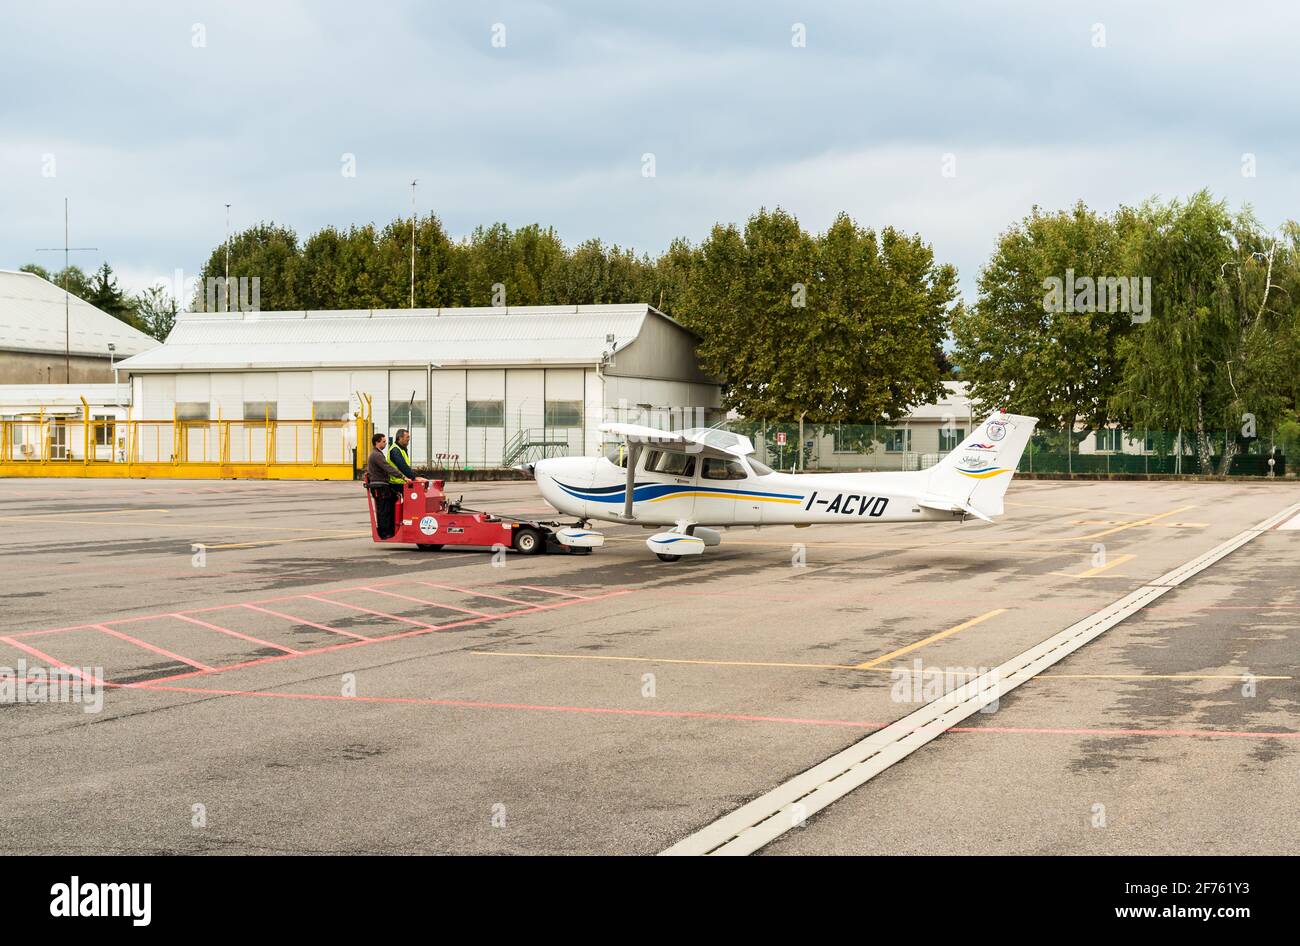 Venegono inferiore, Varese, Italia - 02 settembre 2017: I lavoratori che trasferiscono l'aereo Cessna 172 SP all'hangar, è la flotta dell'Aero Club di Varese. Foto Stock